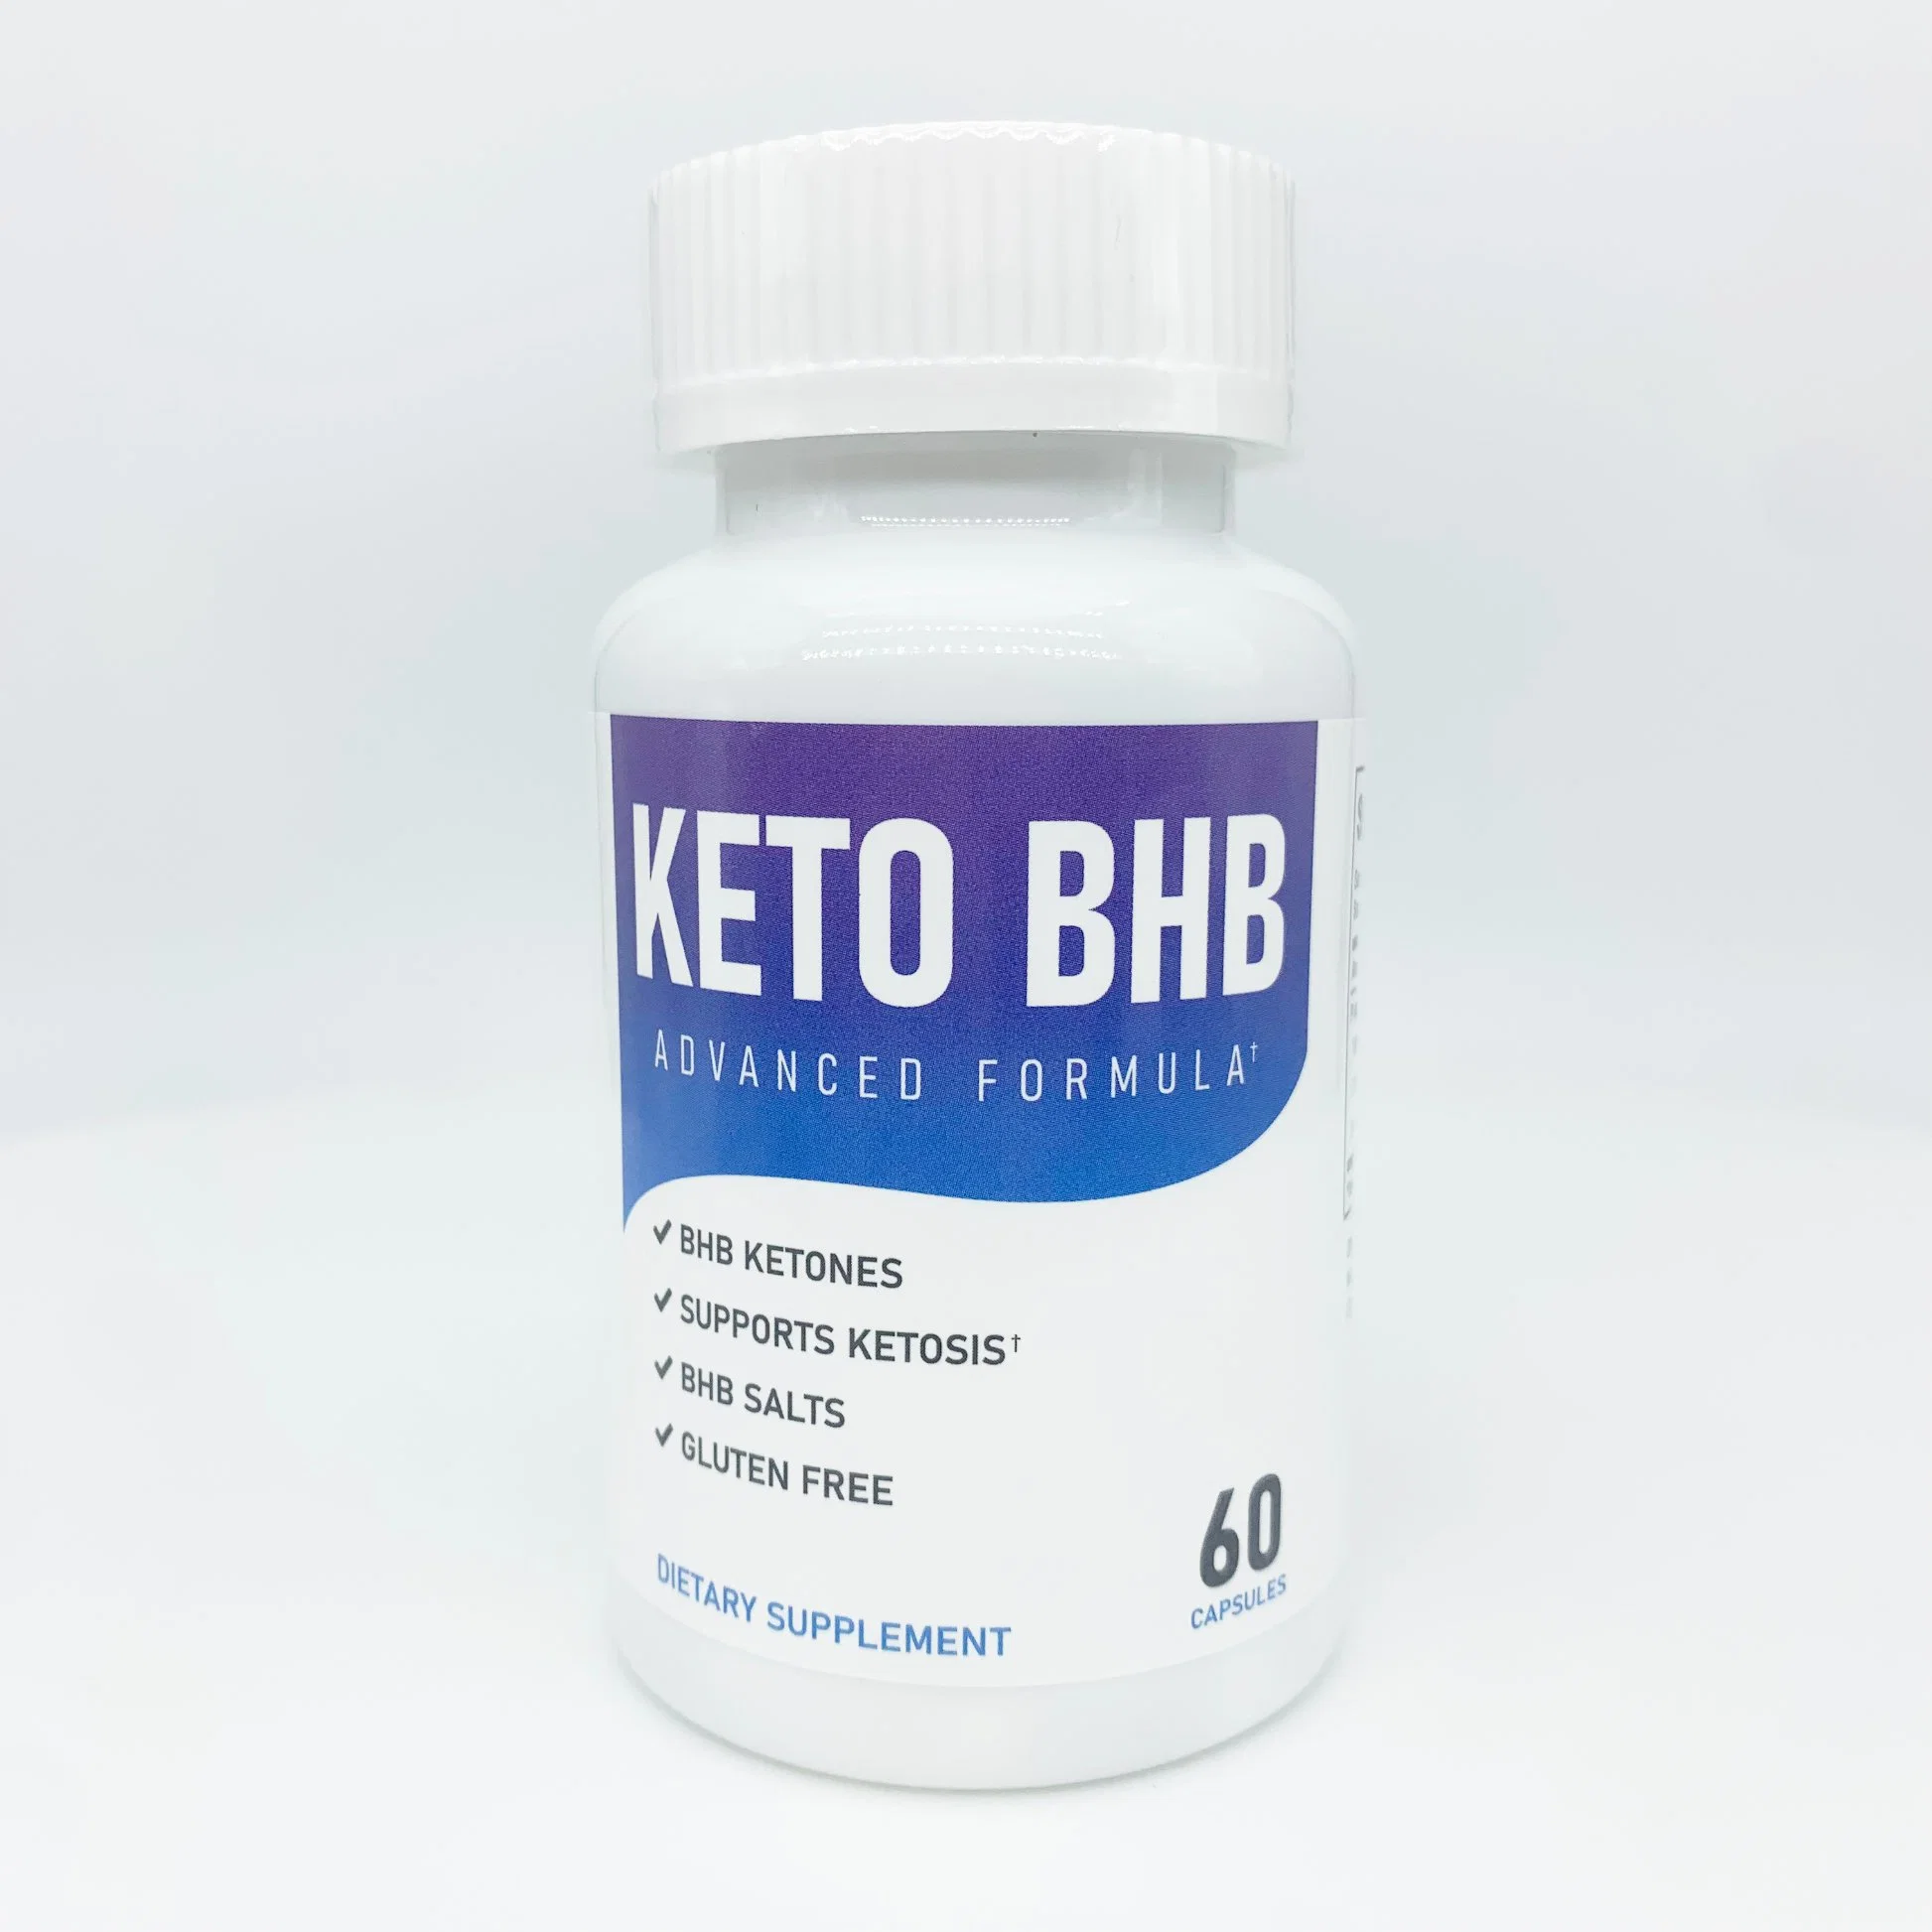 OEM Natural Body Slimming Fat Reduction Fat Burning Burner Weight Loss Detox Keto Bhb Capsules Pills